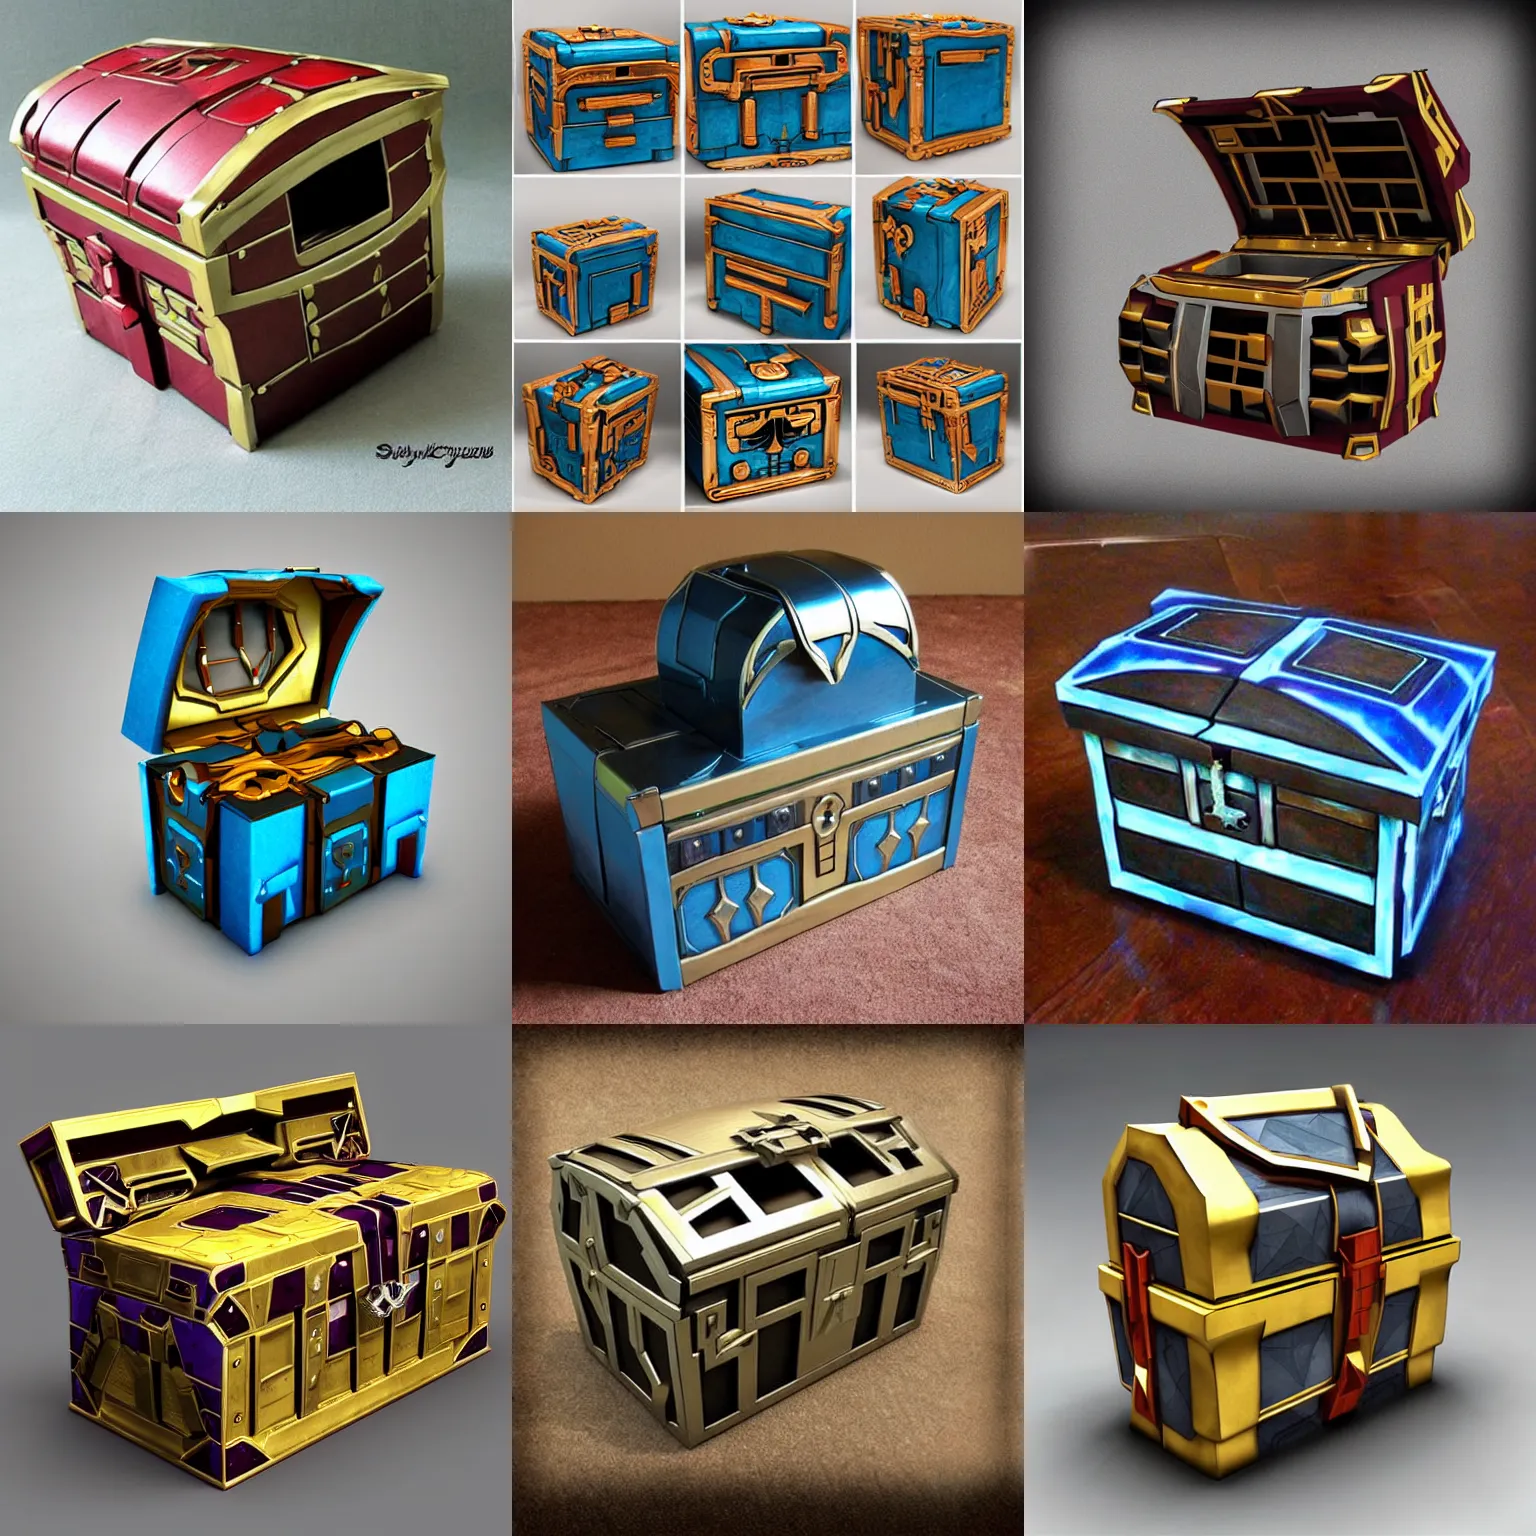 Prompt: futuristic transformer treasure chest, stylized